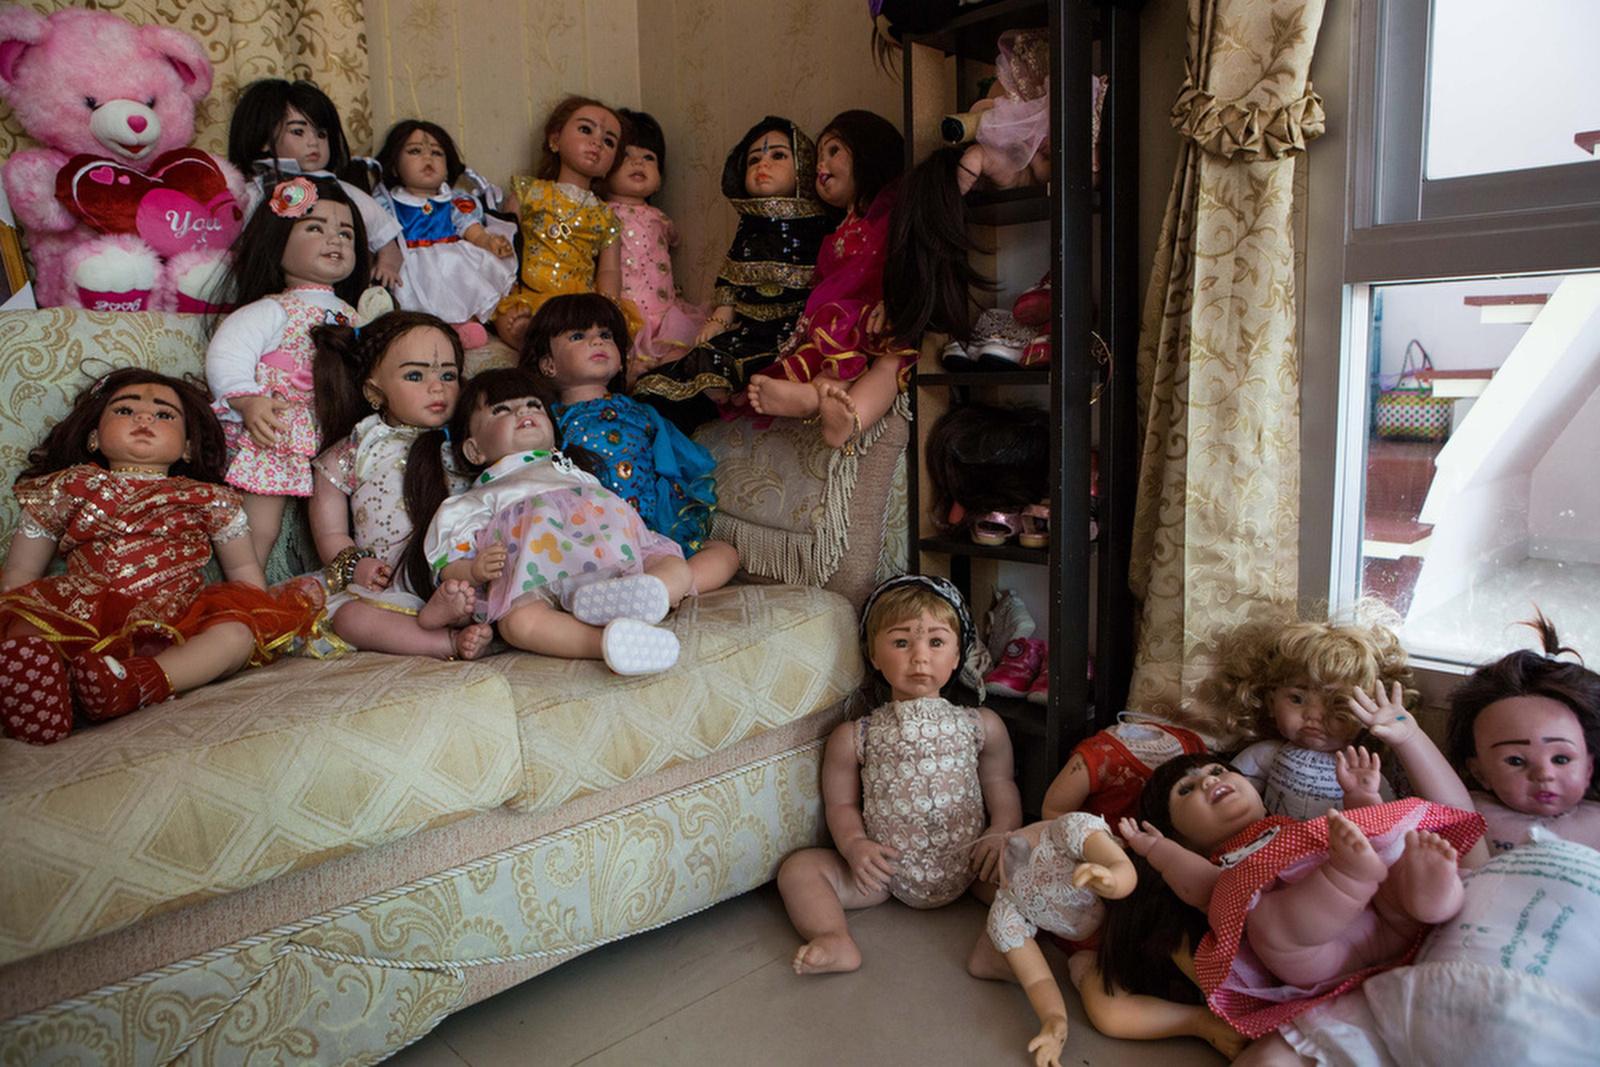 Thailand's Child Angels